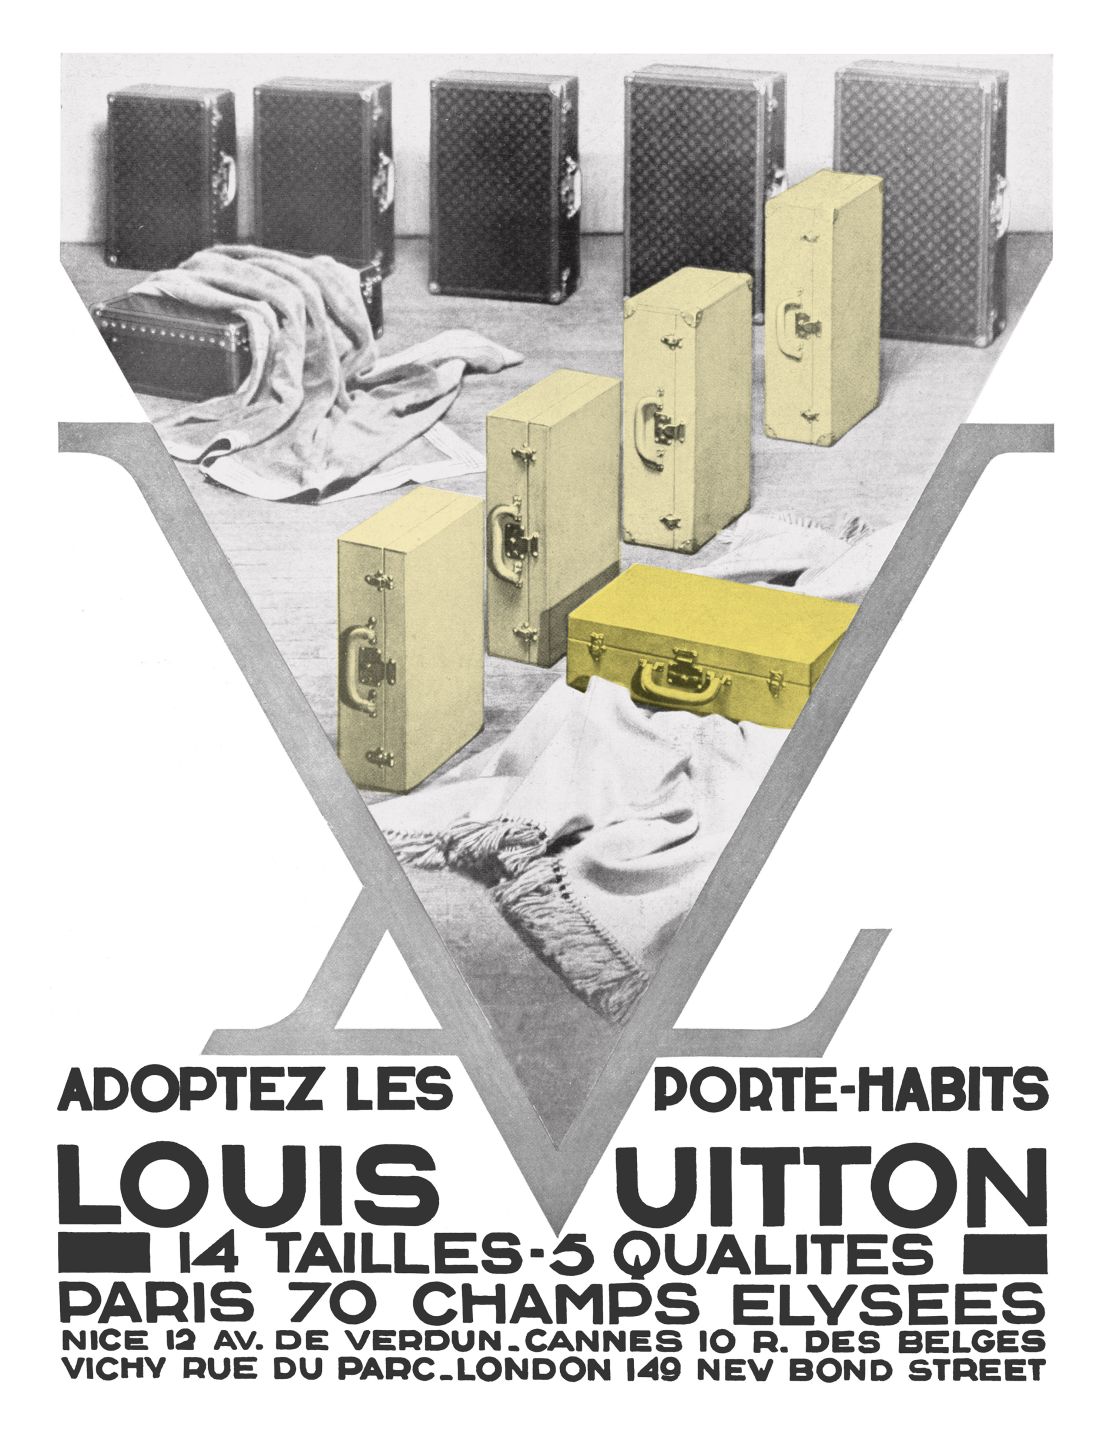 The Fascinating Origin Of Louis Vuitton